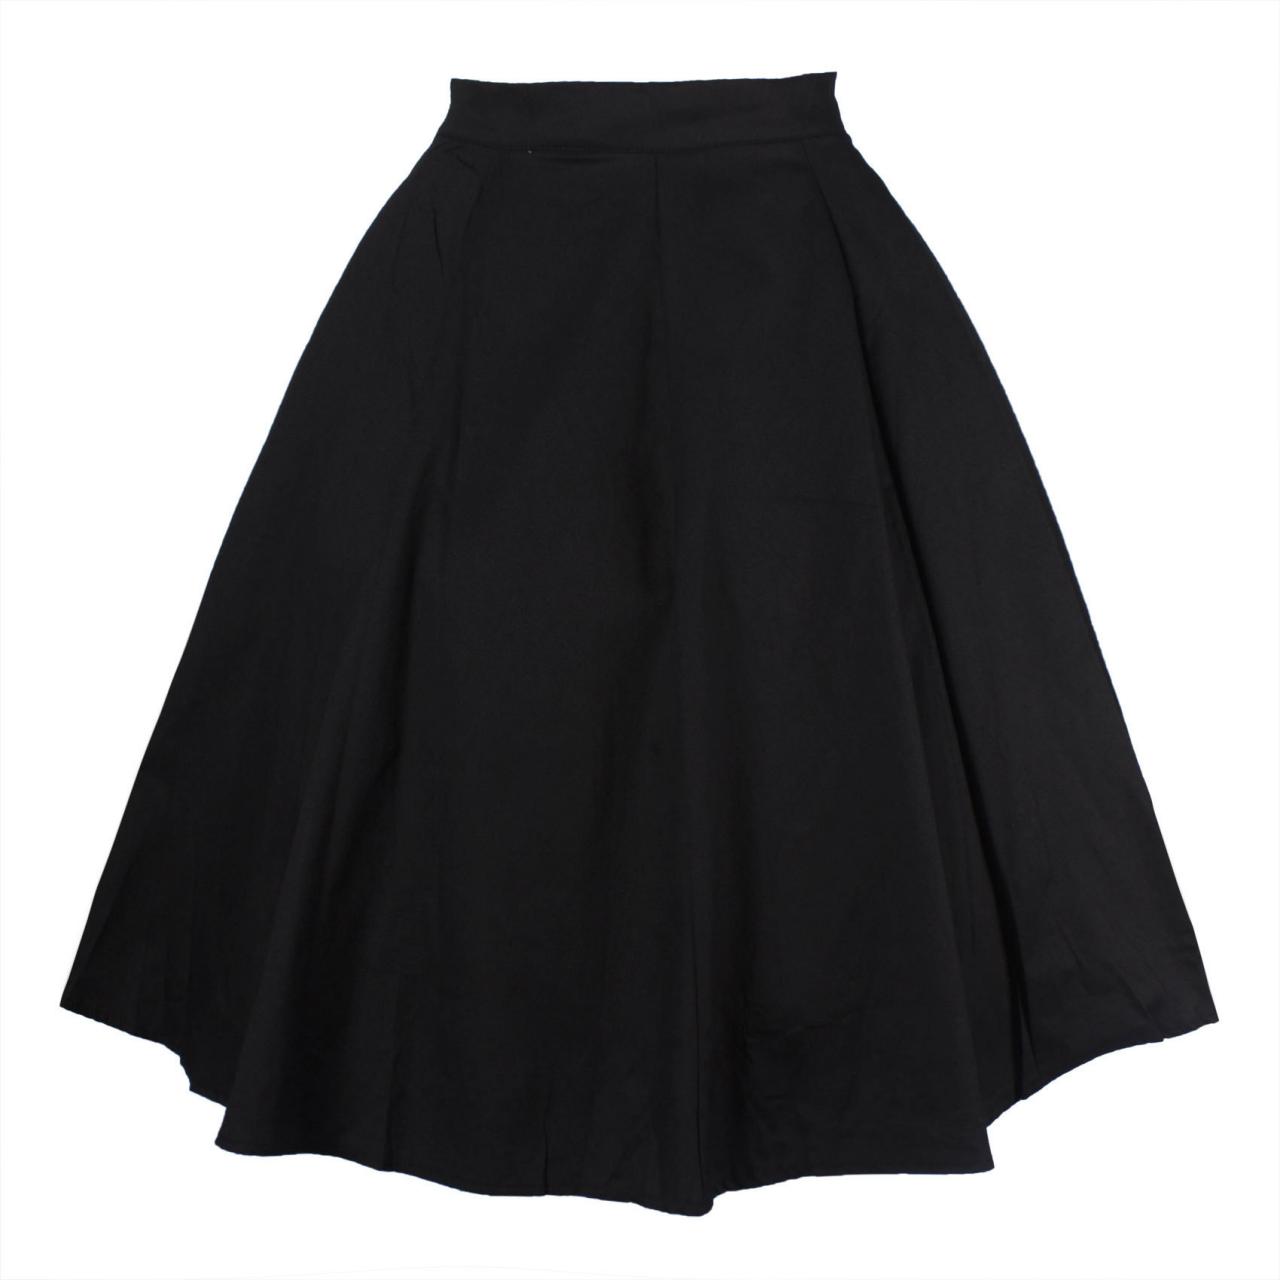 Women Floral Print/Polka Dot Skirt High Waist Vintage 50s 60s A Line Midi Skater Skirt black